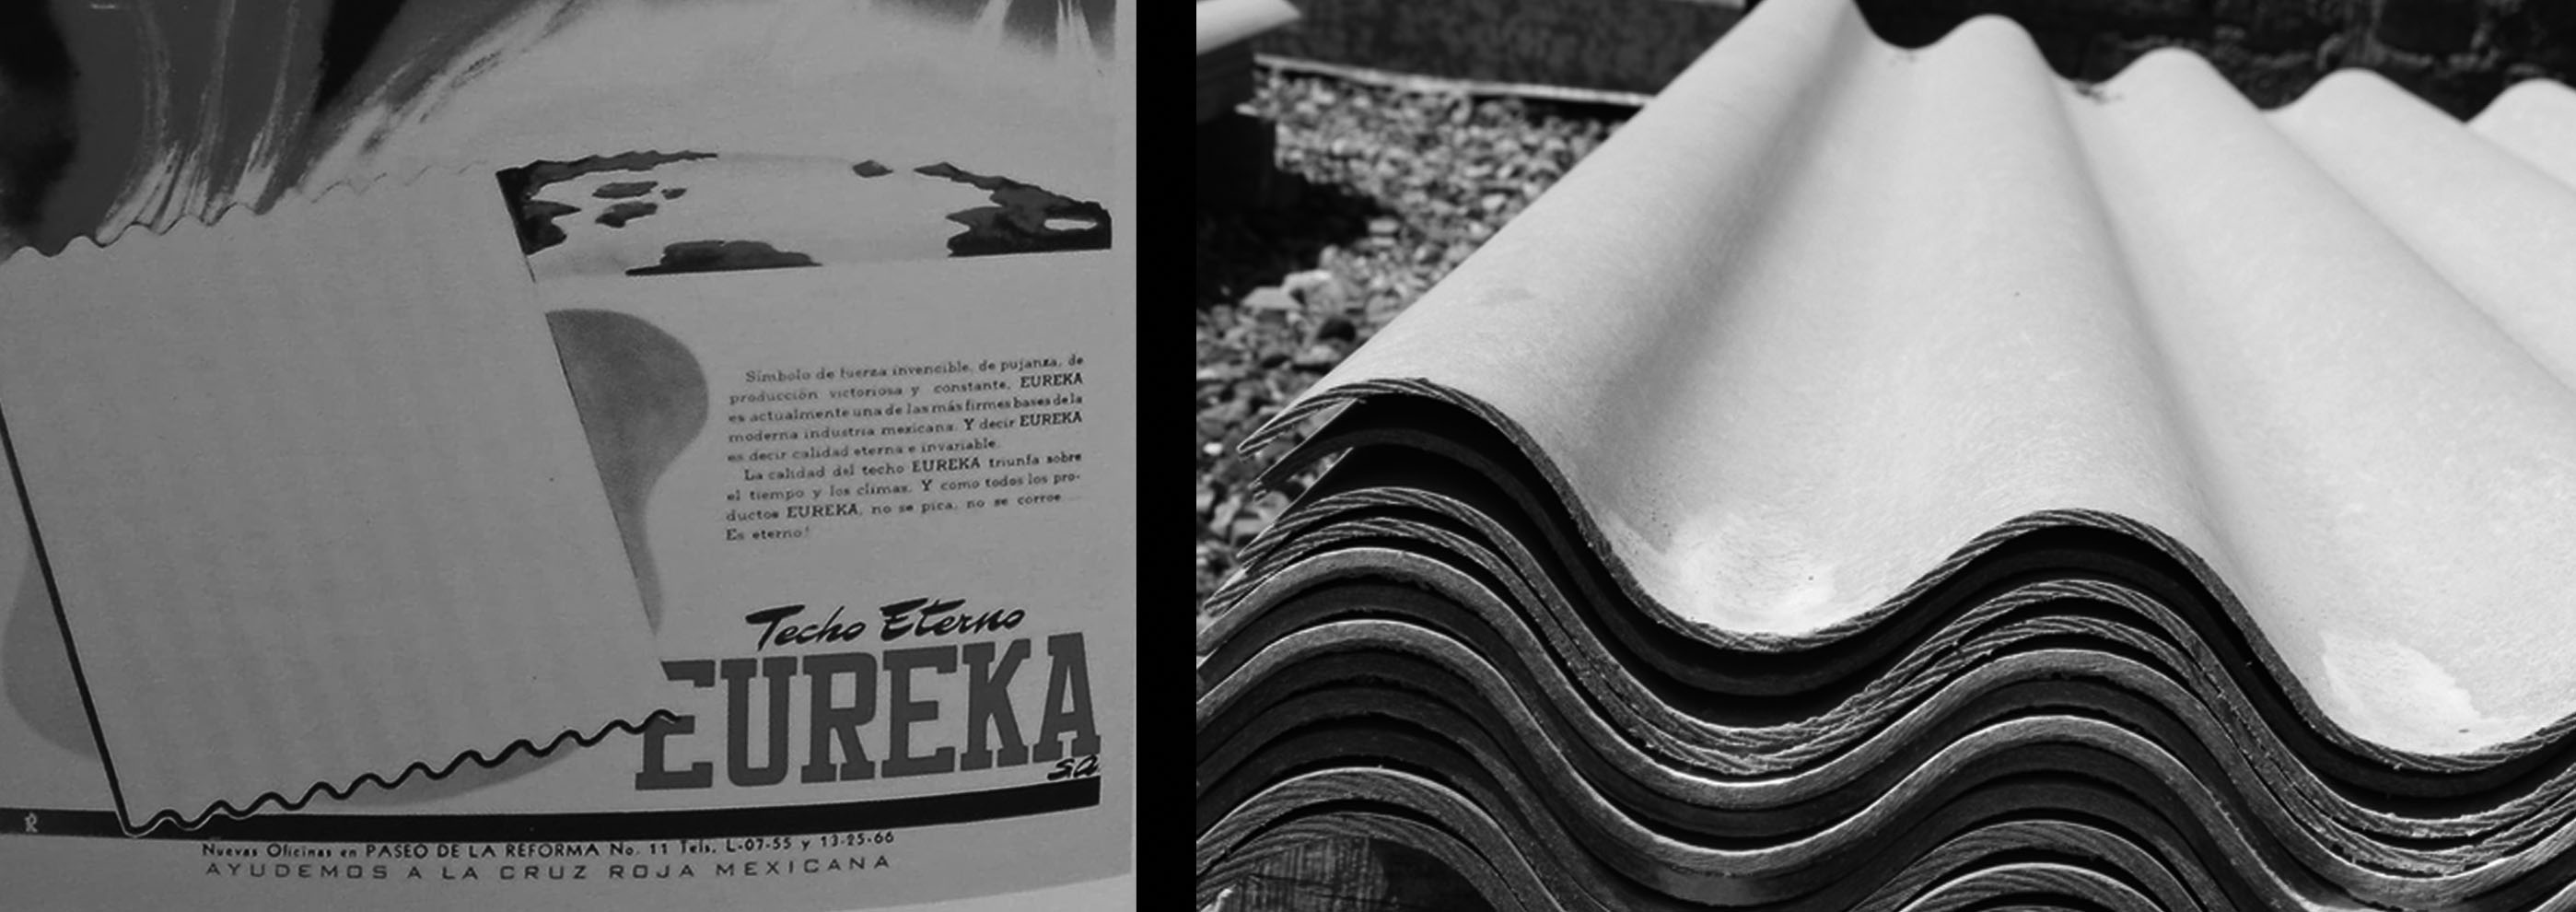 El Grupo Eureka, el asbesto cemento, y la diversificación de una empresa constructora en México